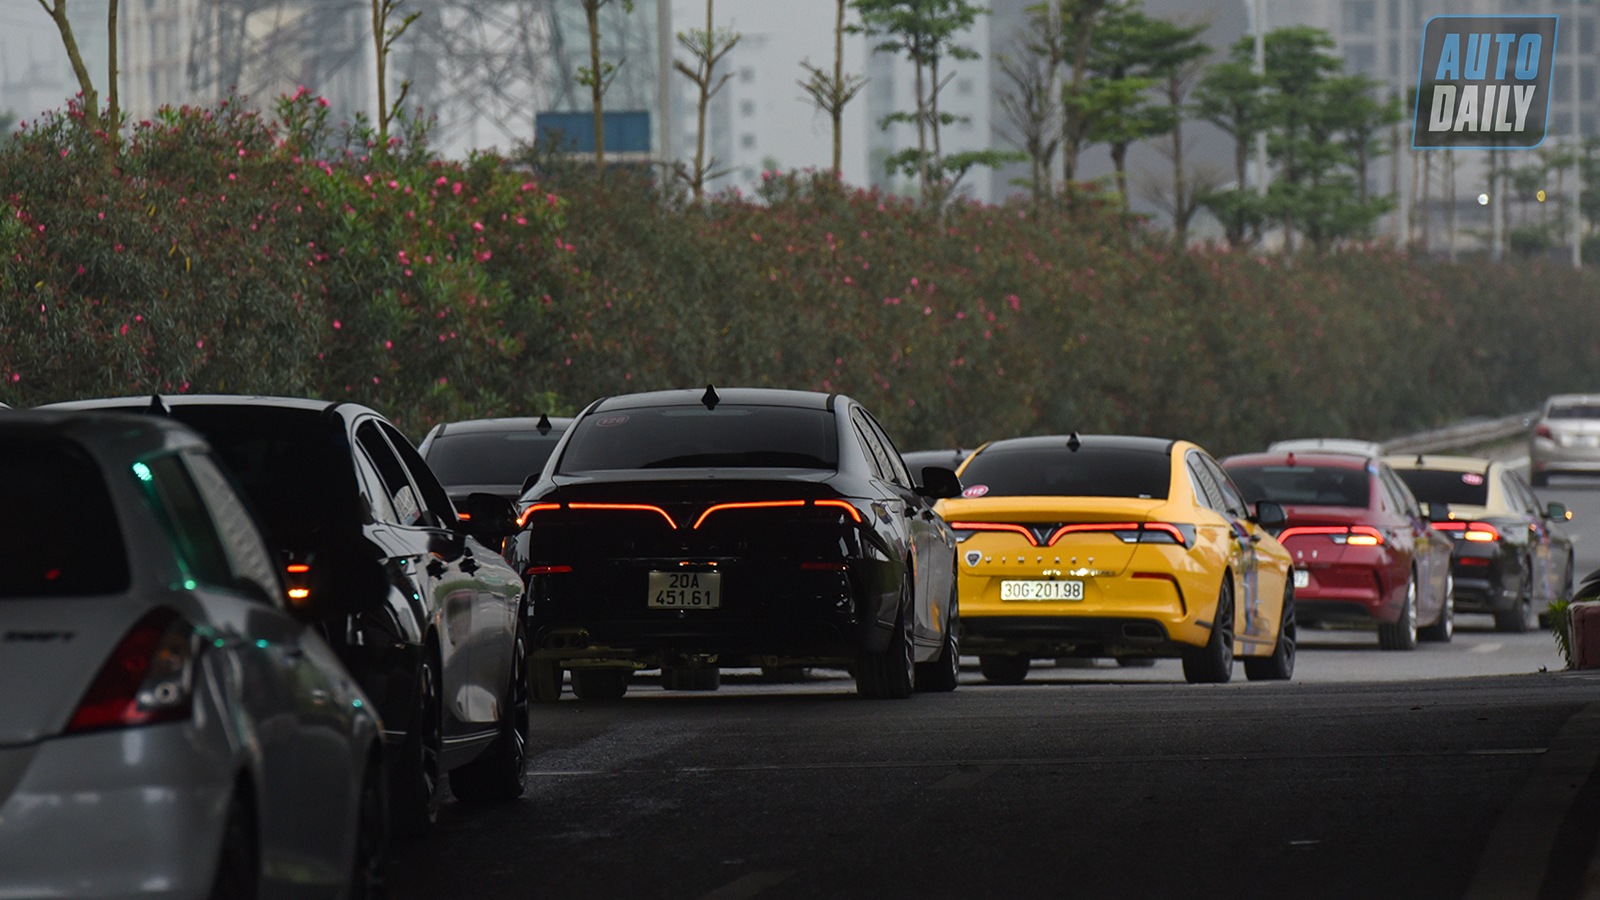 Chùm ảnh gần 60 xe VinFast Lux tại Hà Nội xuất phát Offline 3 miền tại Hội An dsc-6314-copy.jpg